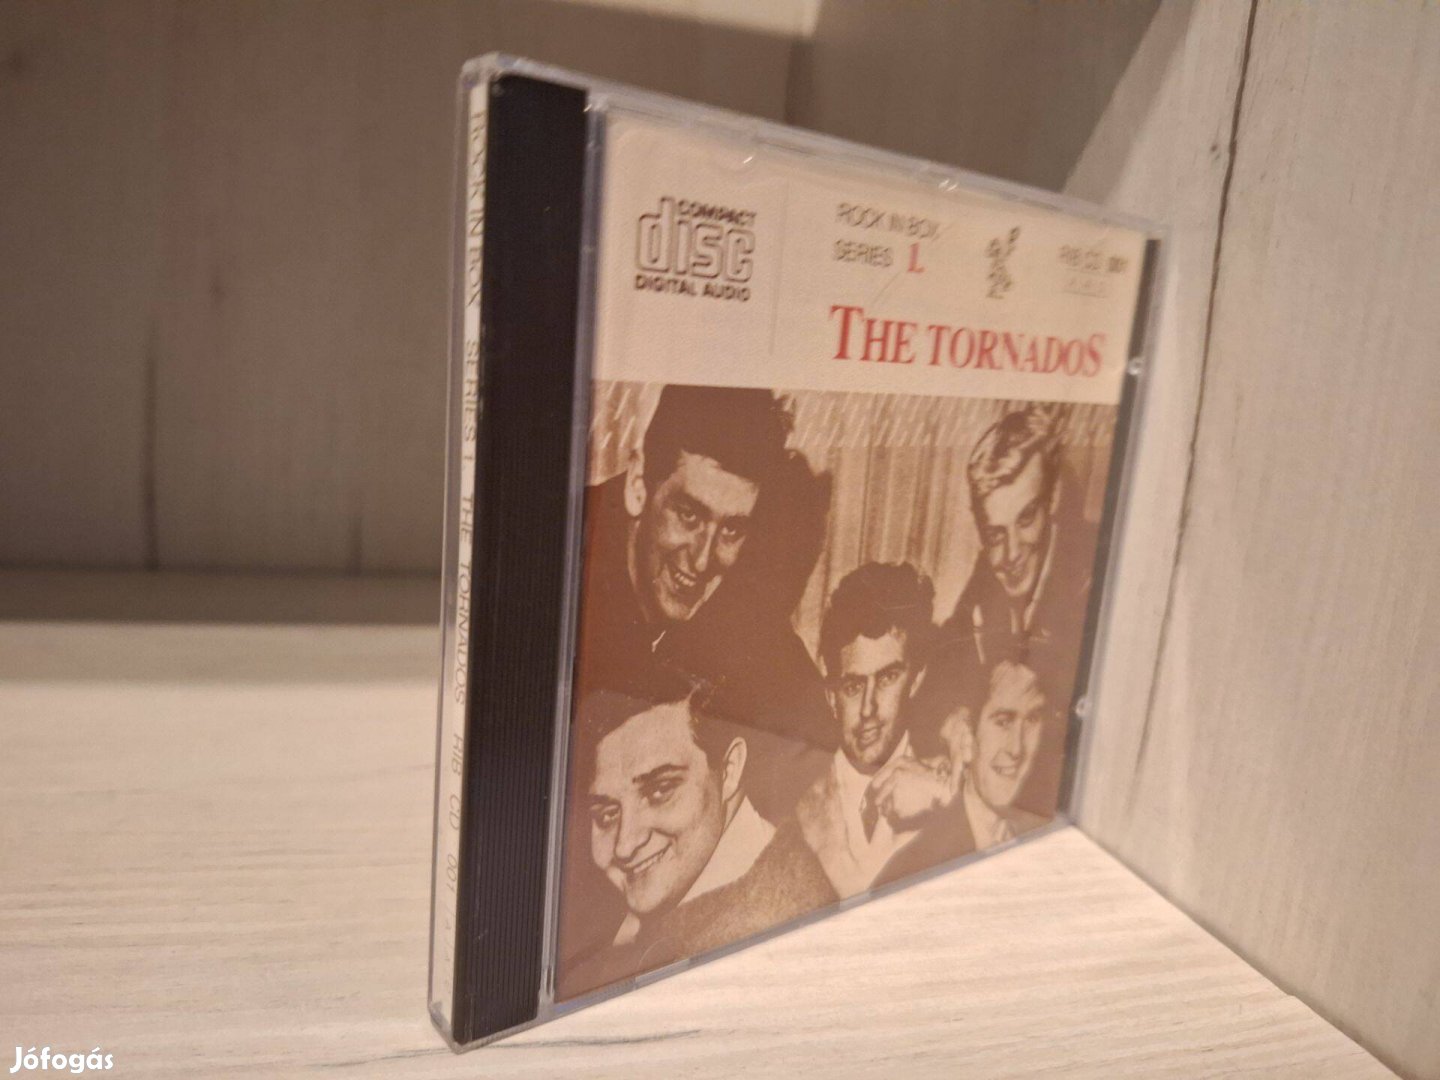 The Tornados - The Tornados CD